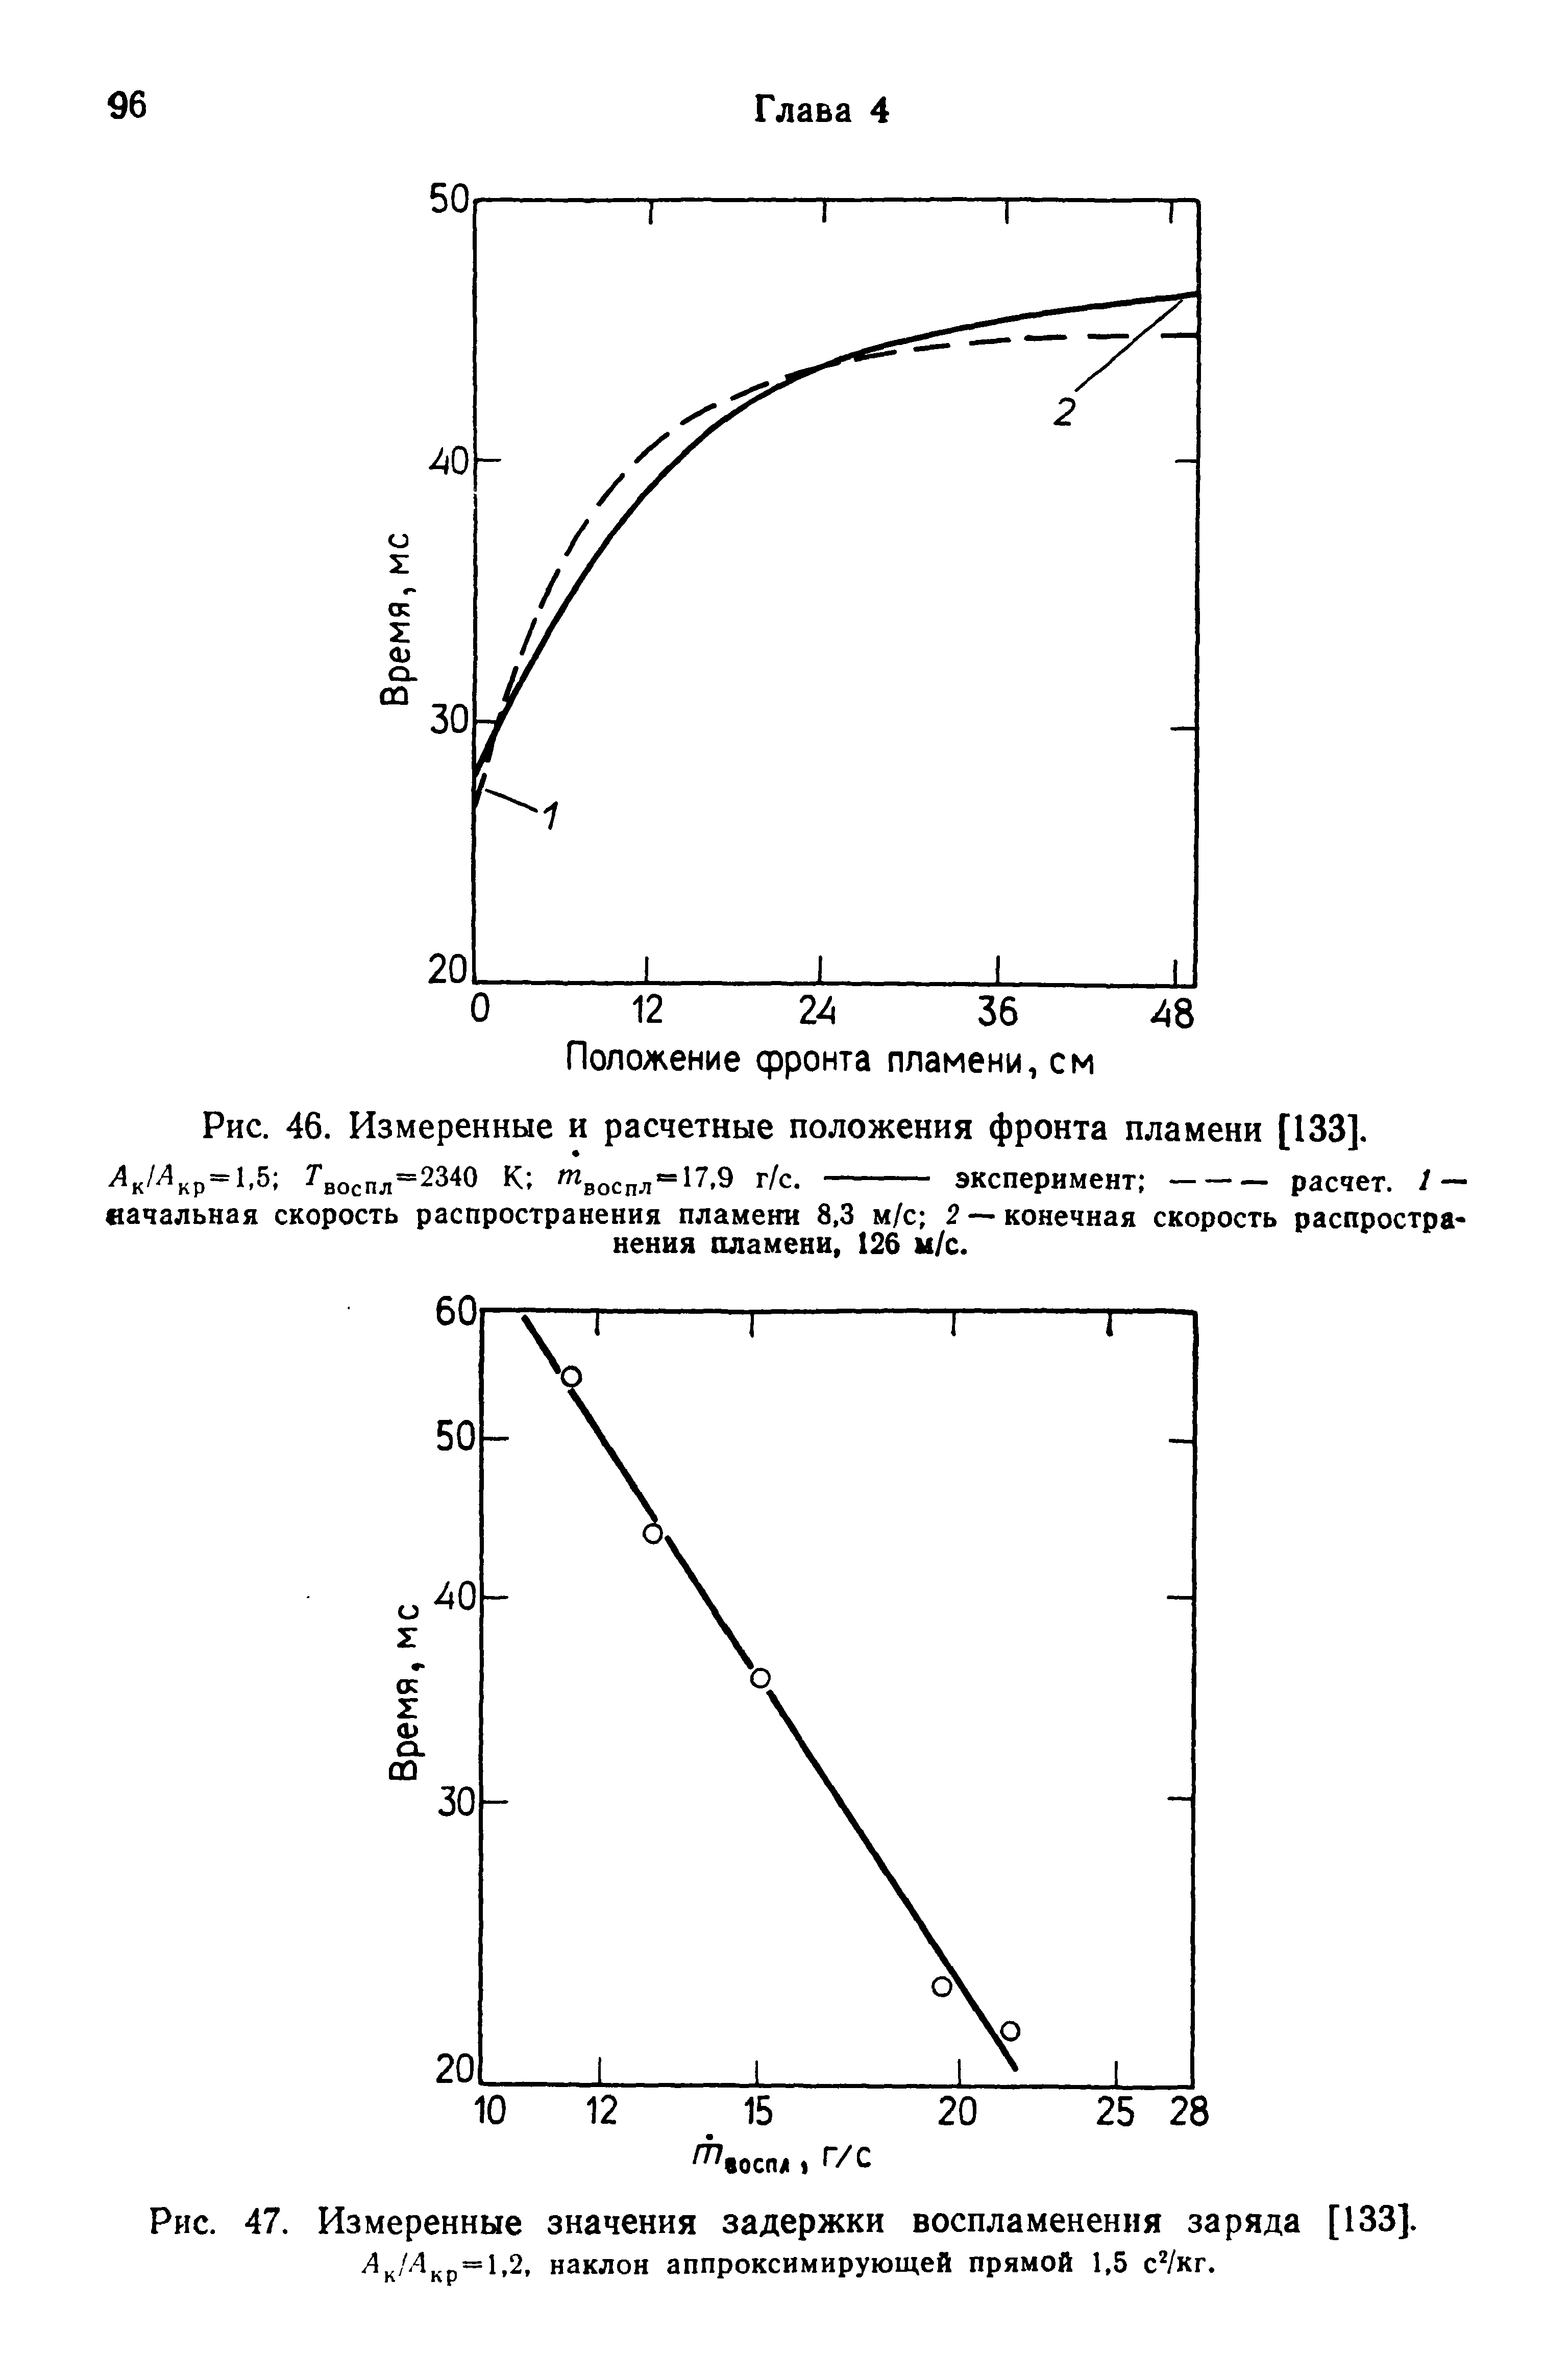 Рис. 47. Измеренные значения задержки воспламенения заряда [133].
